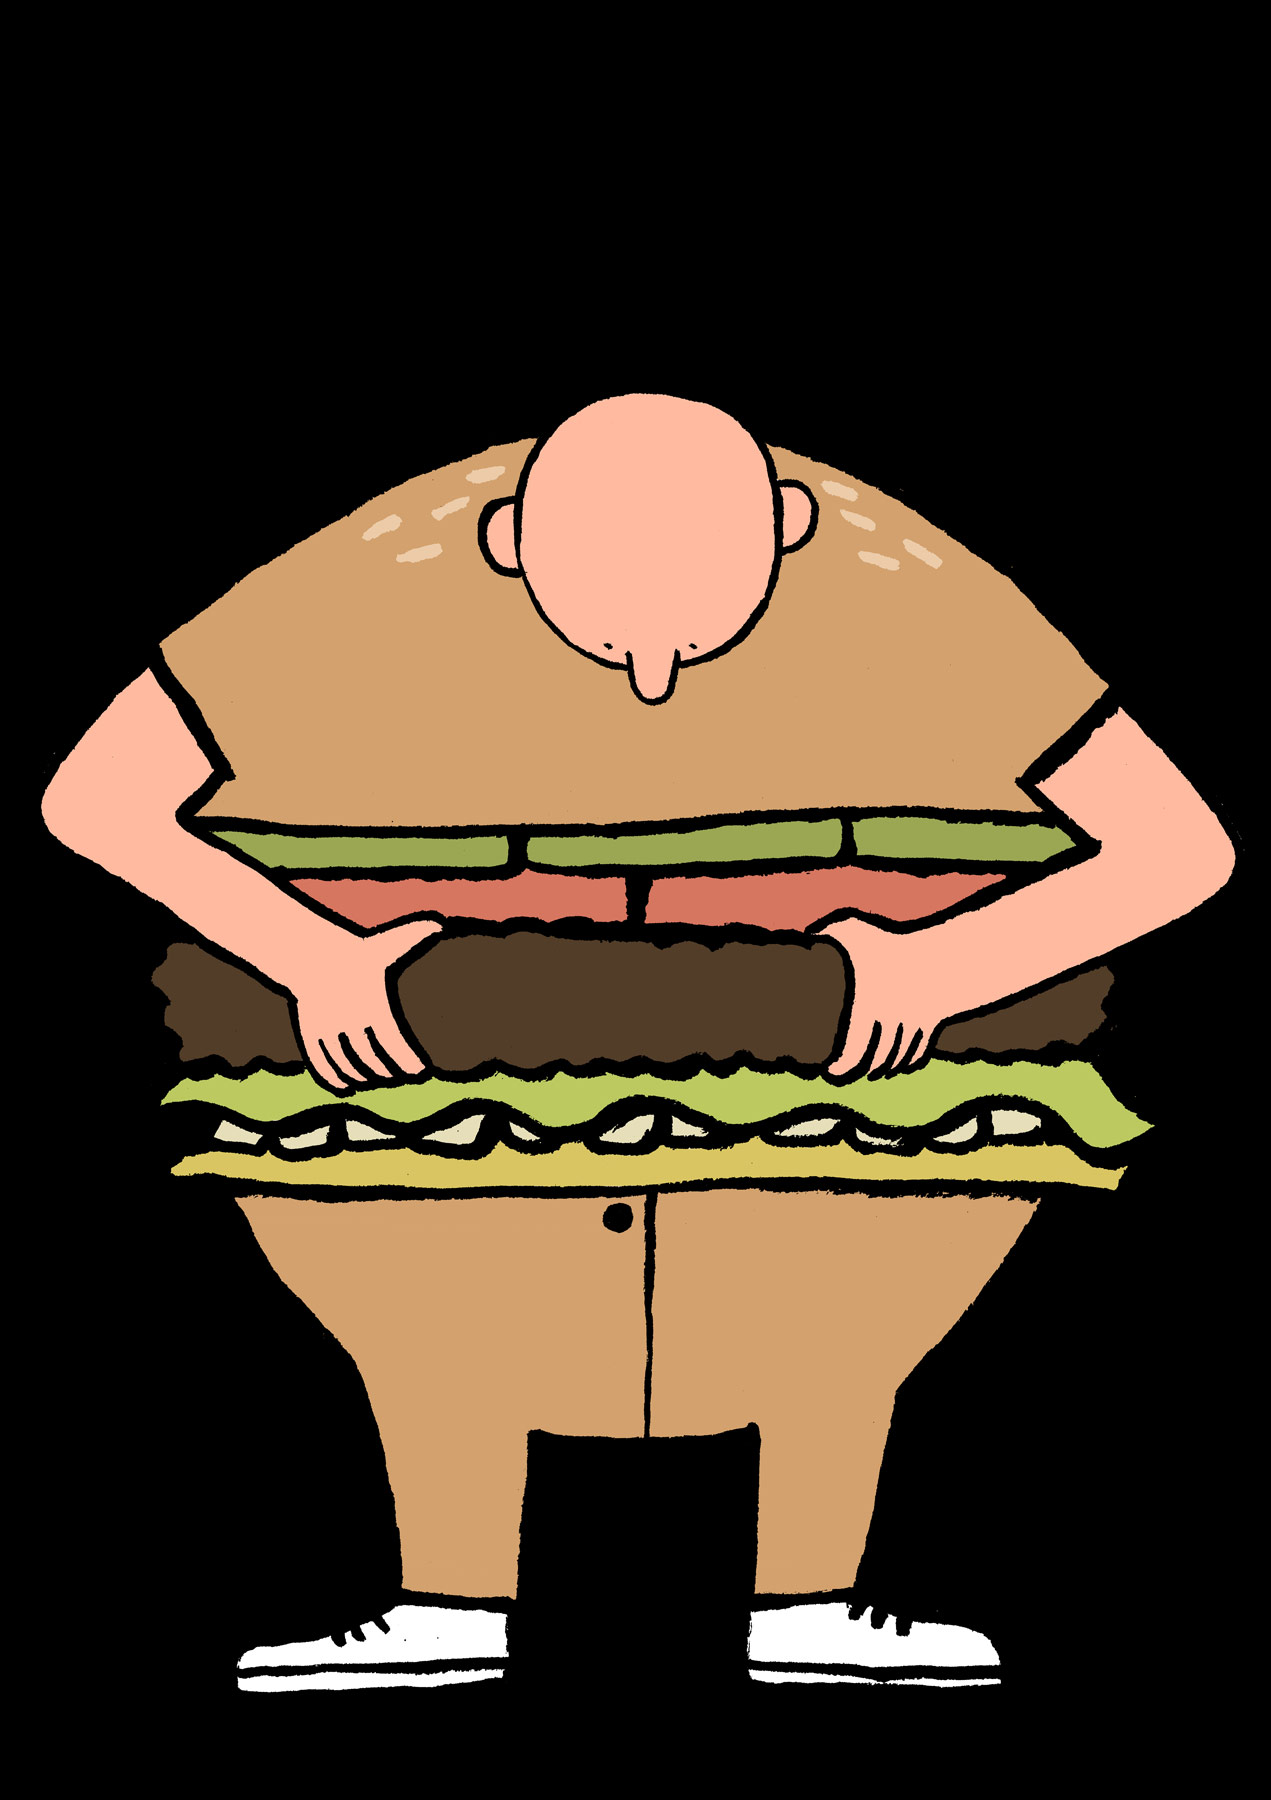 Extra Layer: Hamburger man